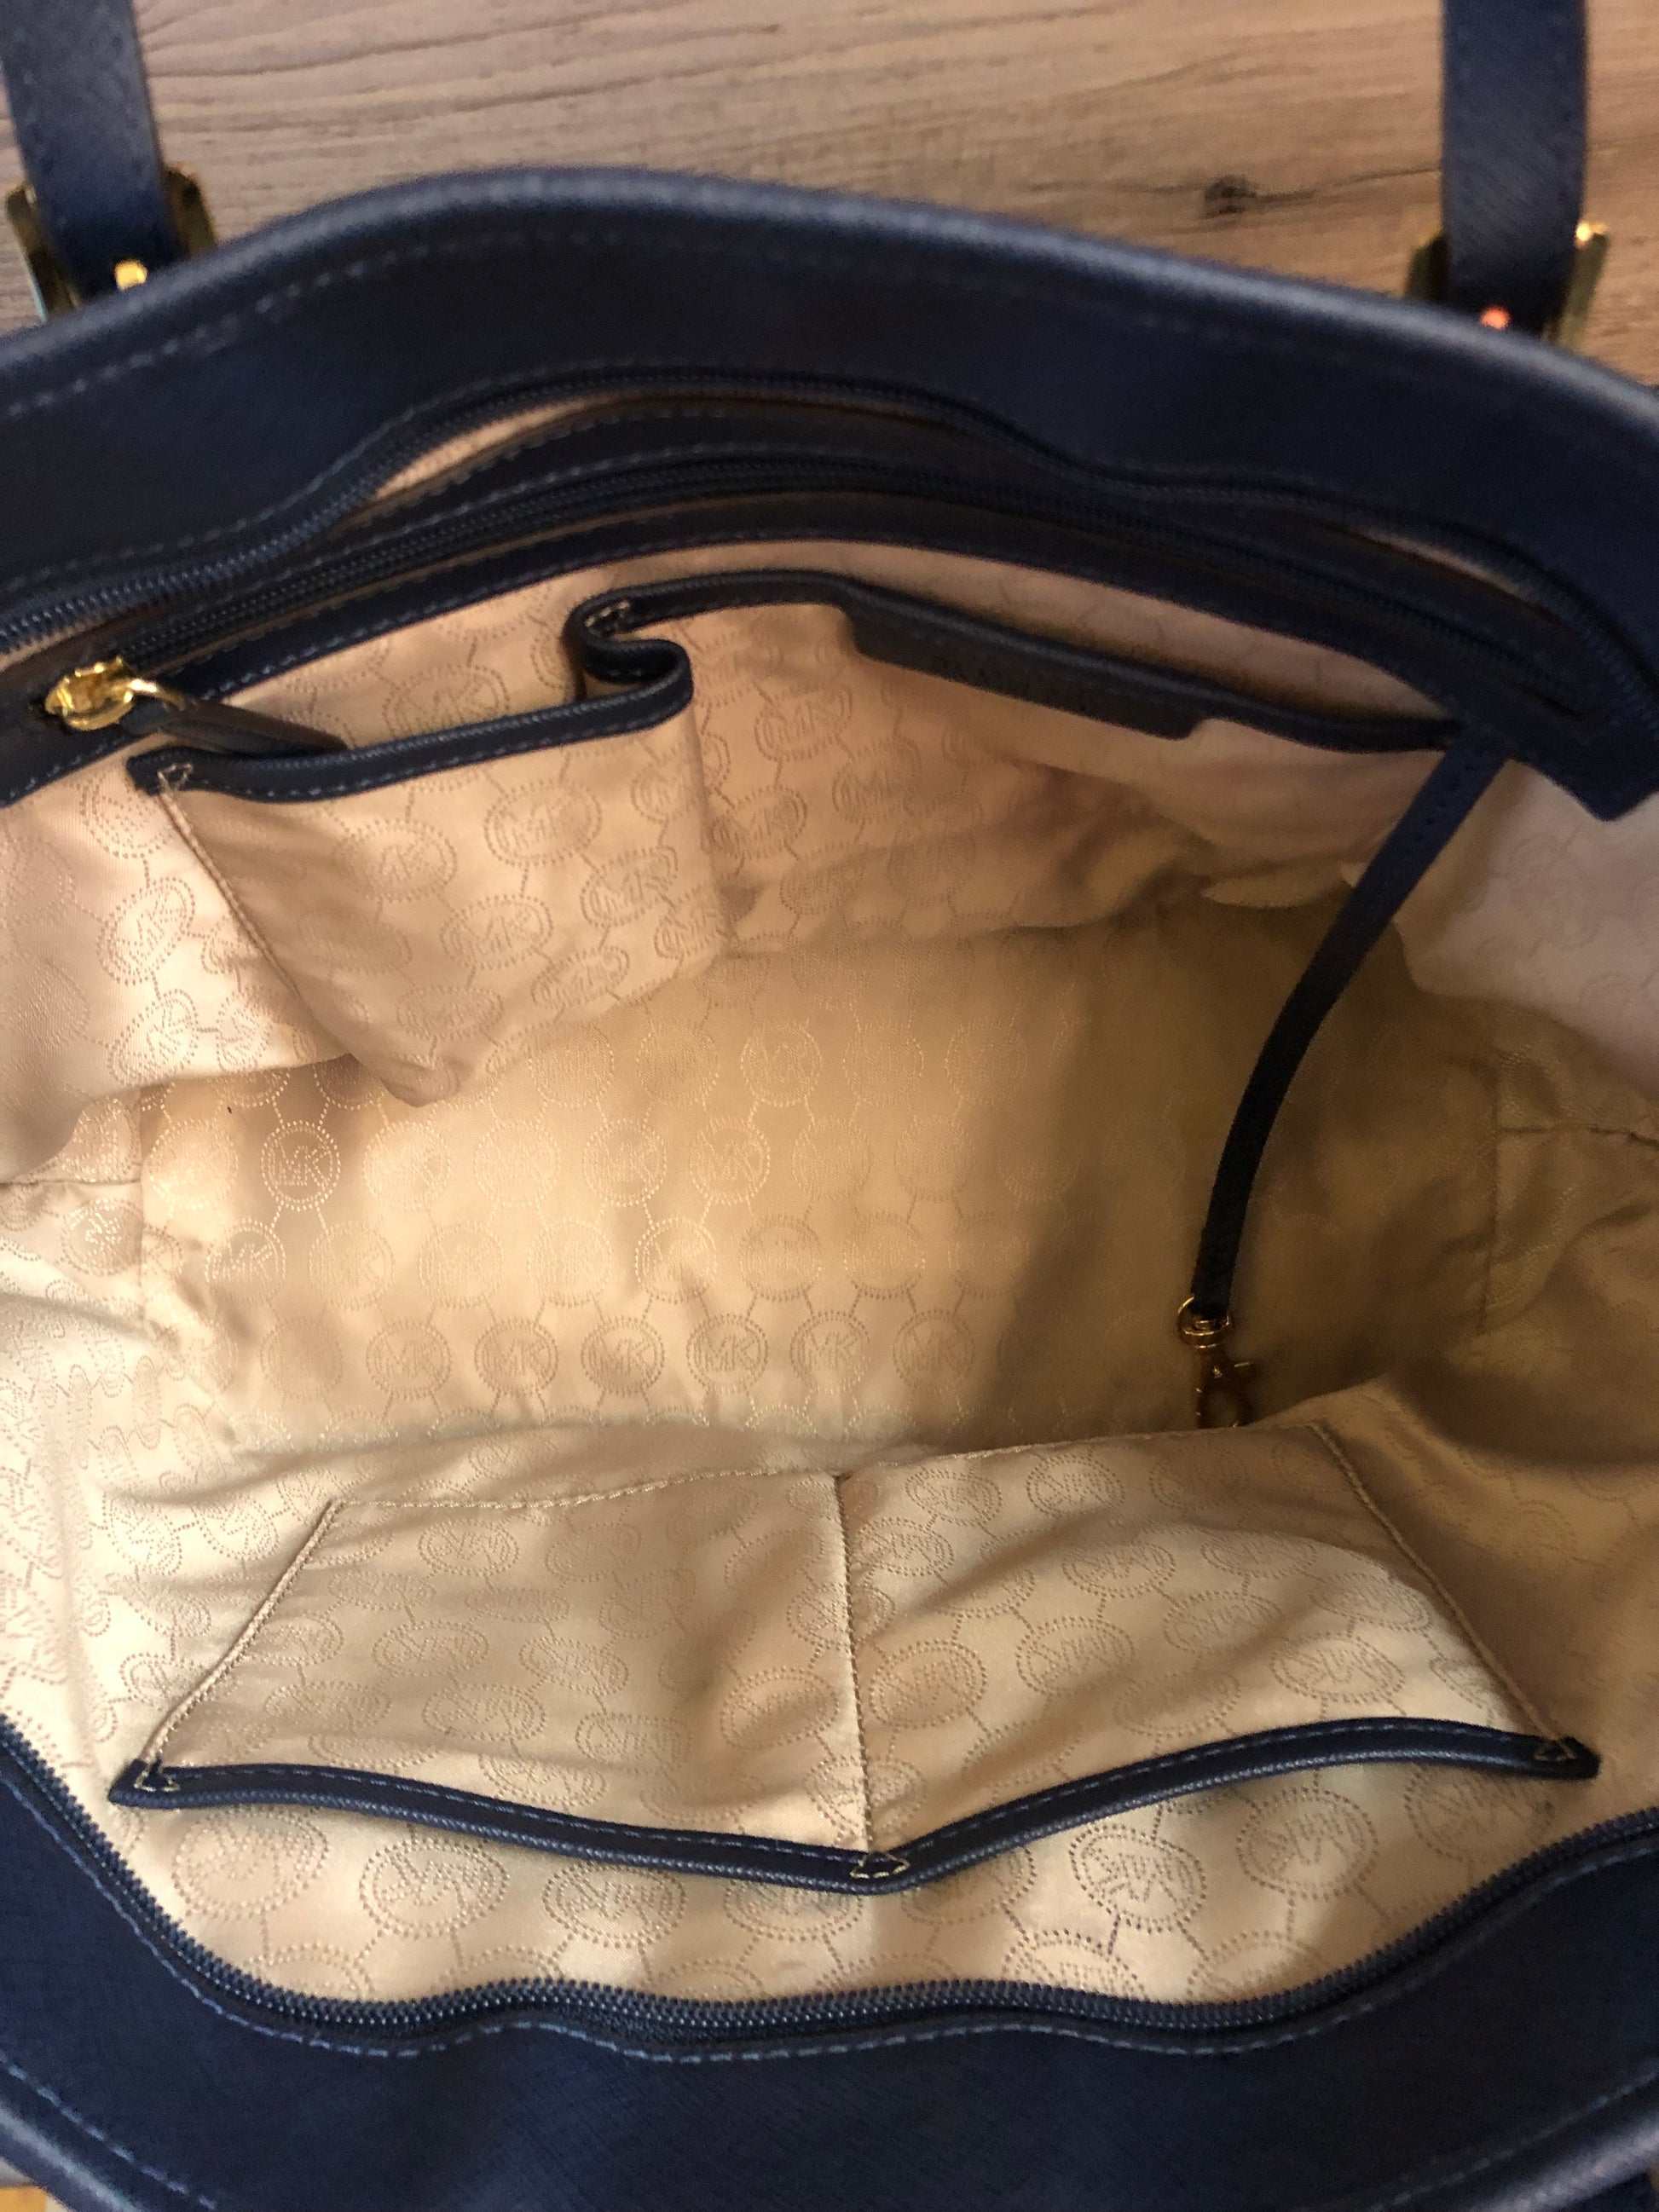 Michael kors handbag navy blue  Handbags michael kors, Navy blue handbags,  Blue michael kors purse